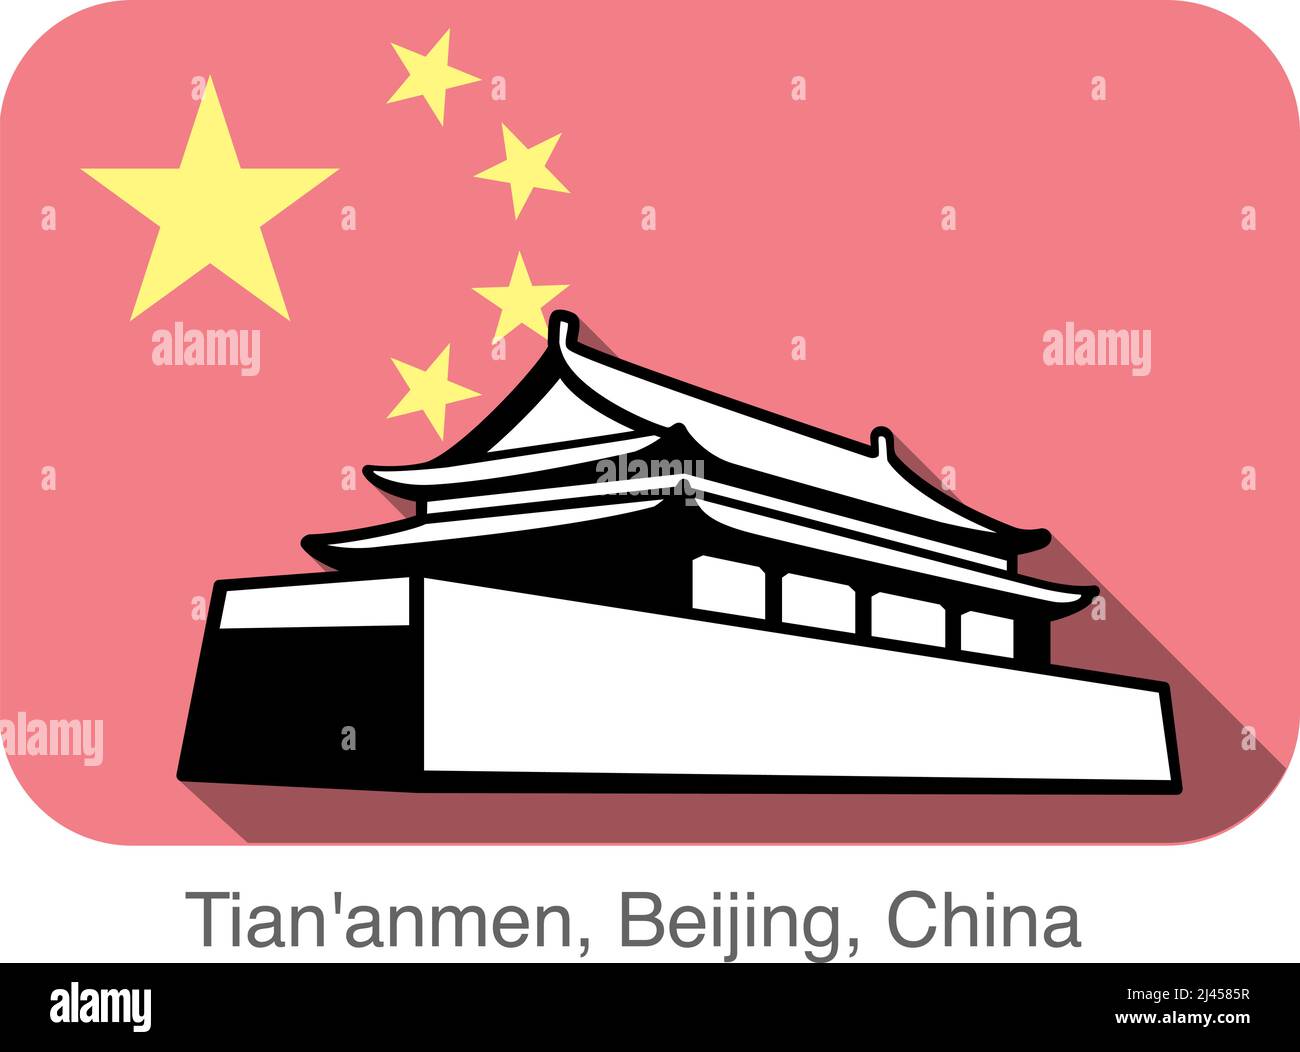 Bâtiment Tiananmen. Point de repère de la série mondiale, le fond est le drapeau national chinois, célèbre endroit pittoresque Illustration de Vecteur